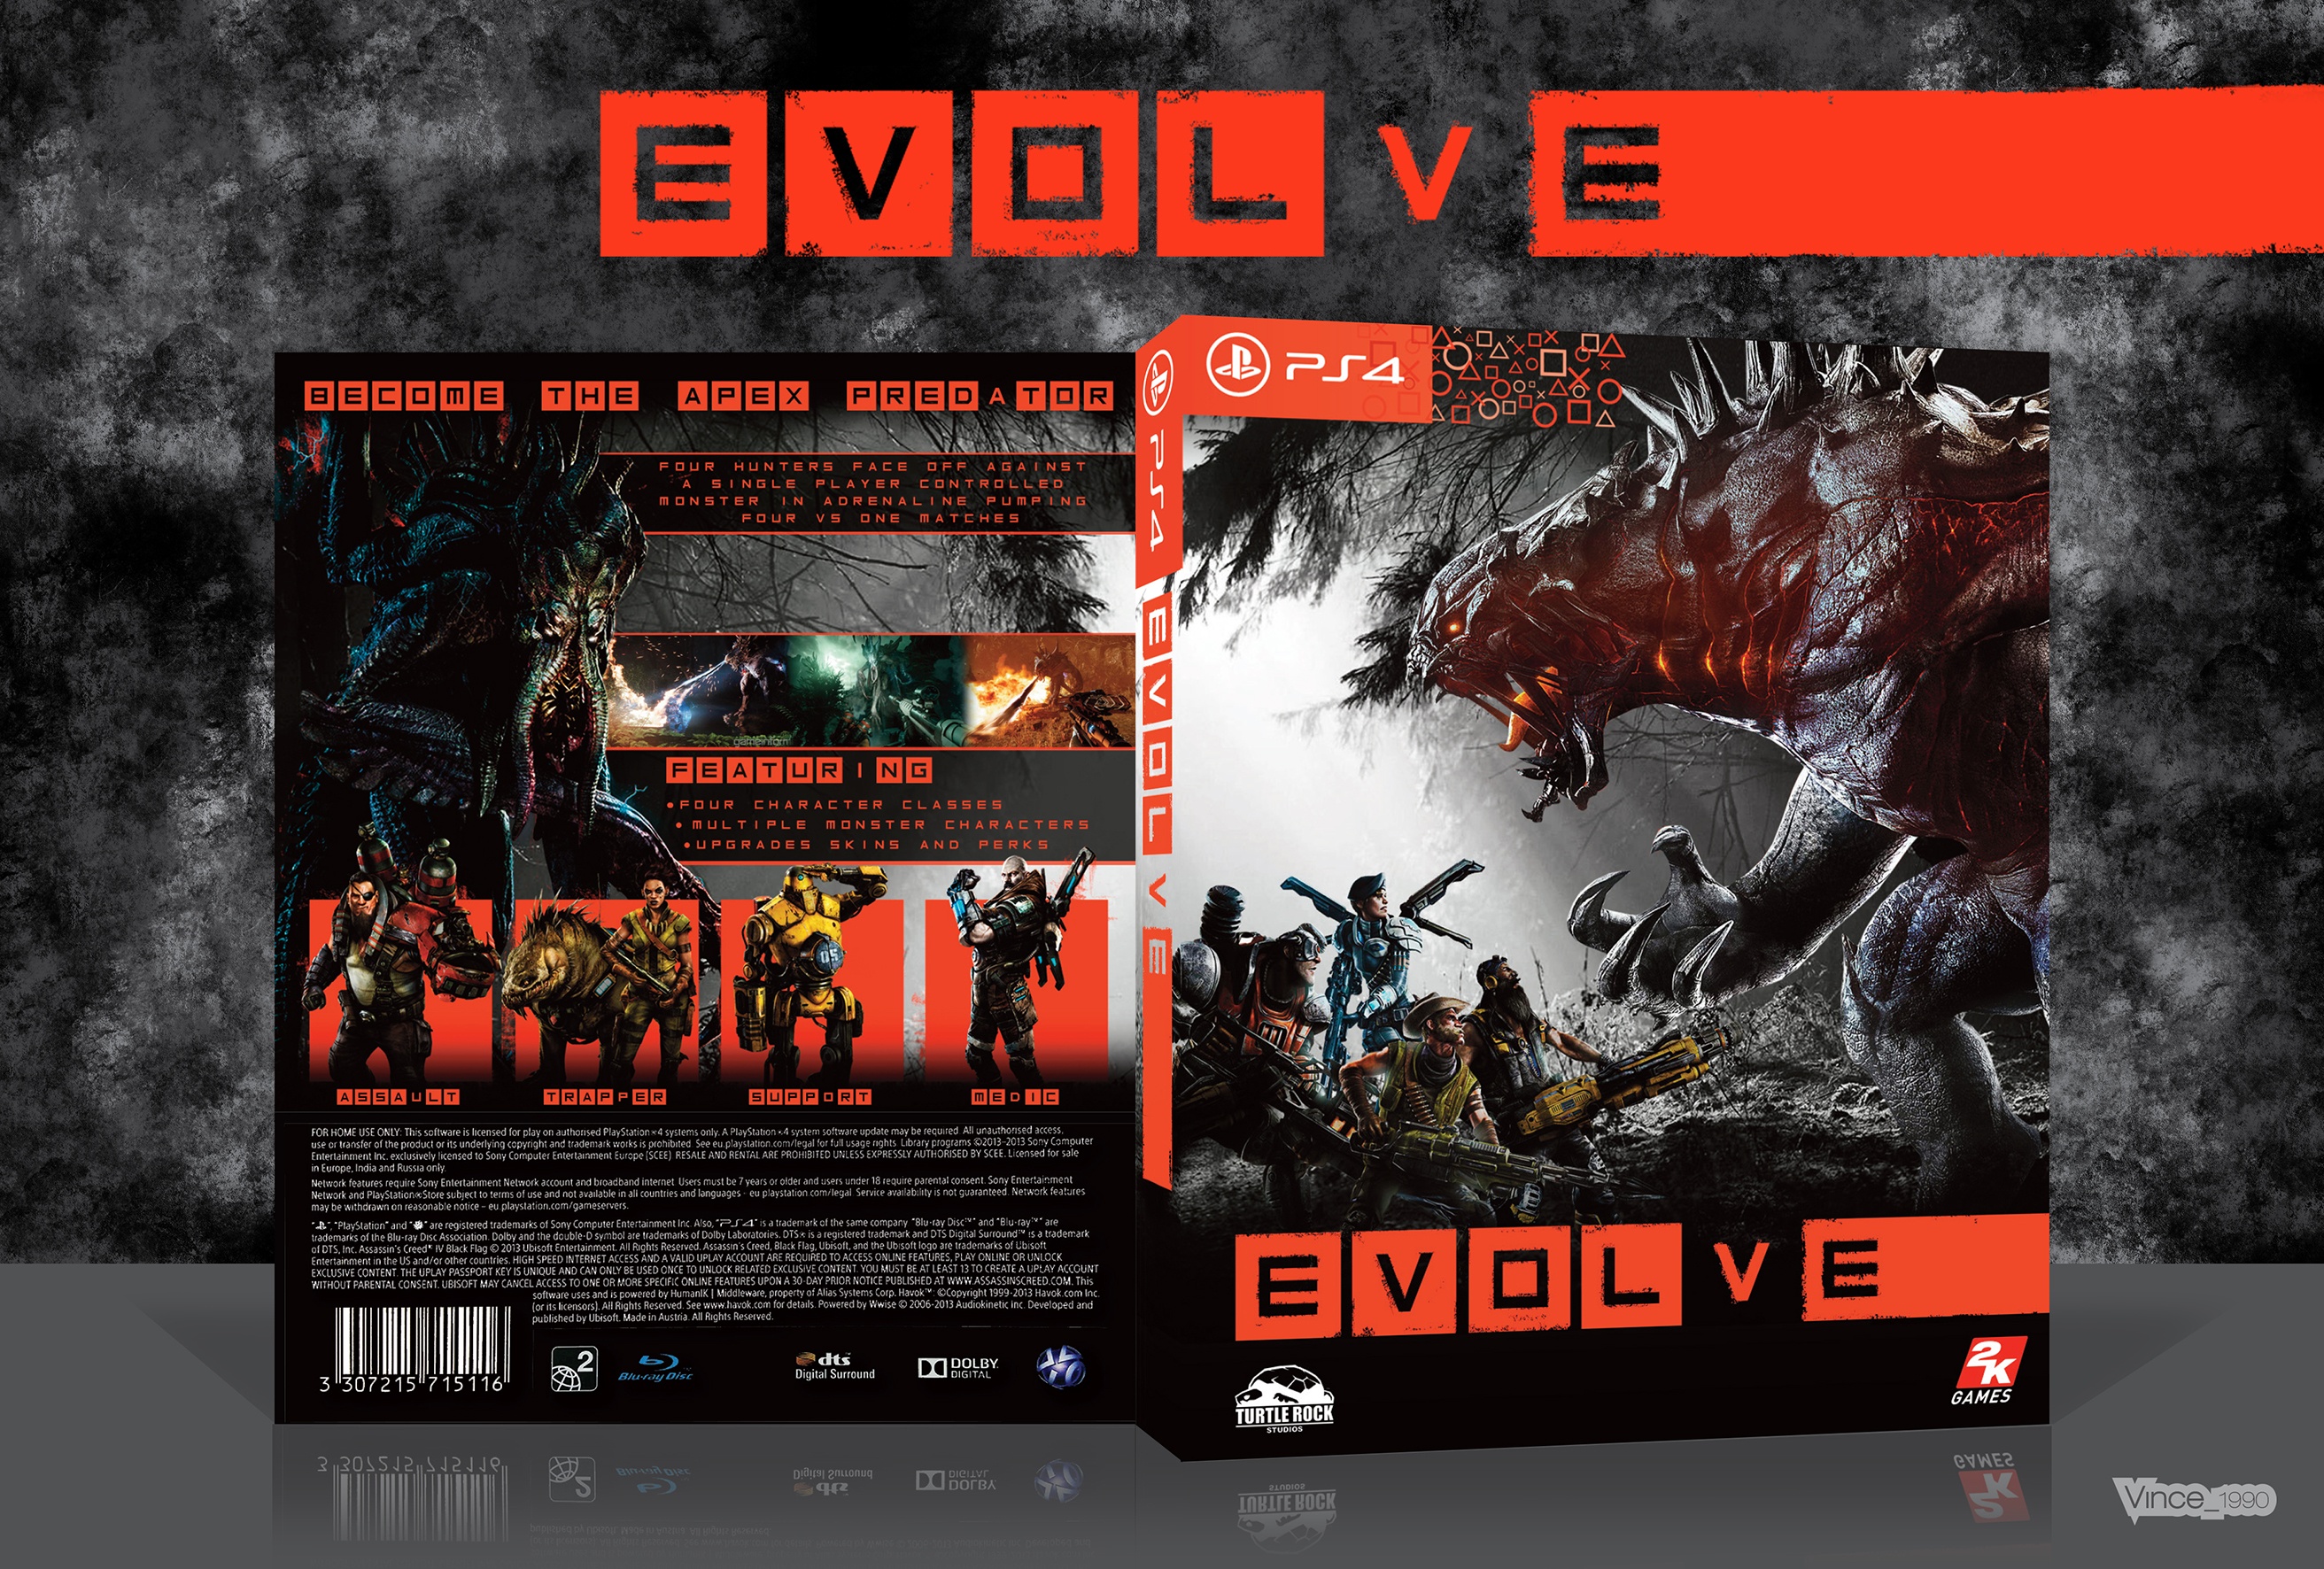 Evolve box cover